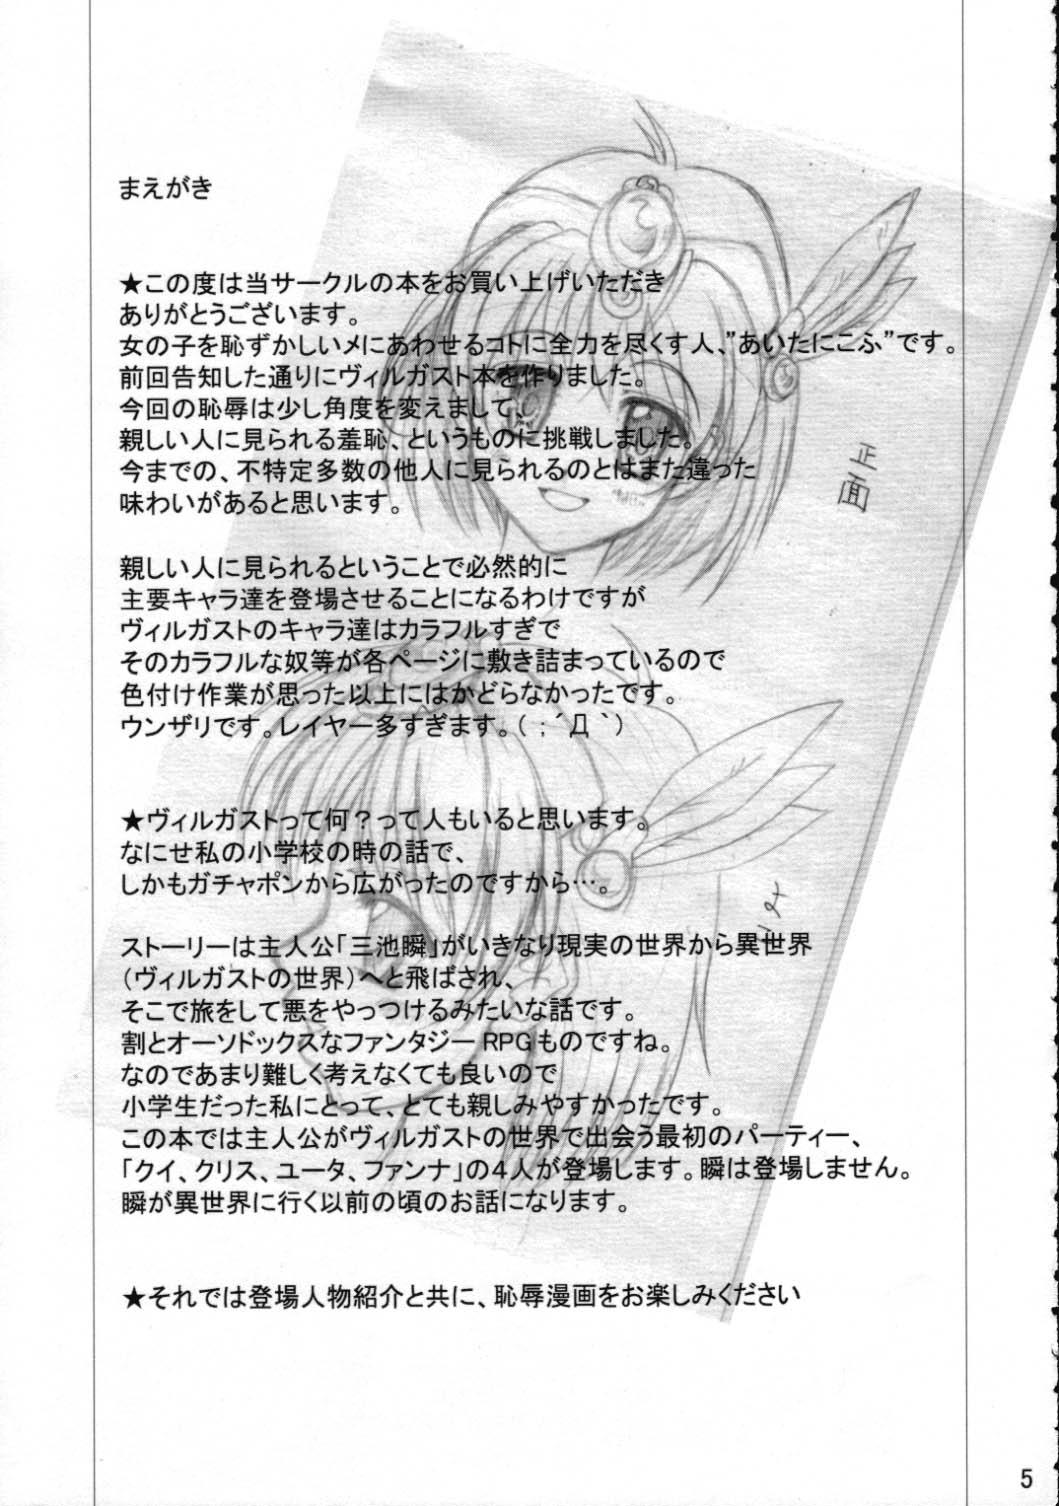 Leite Toraware no Shoujo - Kouryuu densetsu villgust Ballbusting - Page 4